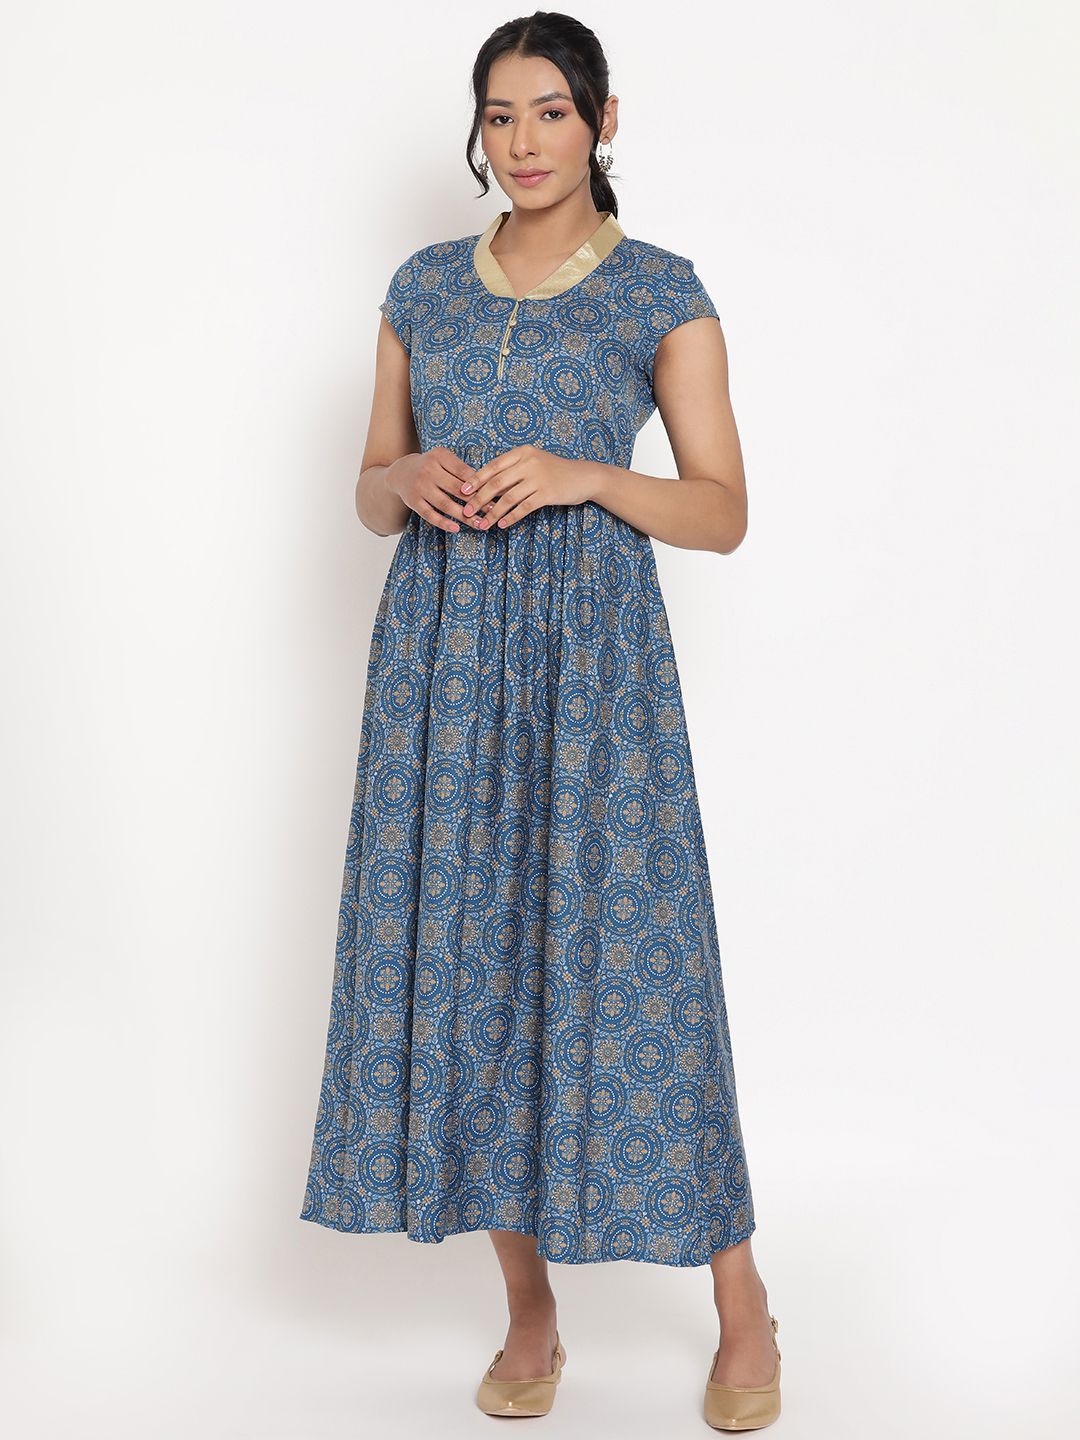 AURELIA Blue Ethnic Motifs Ethnic Maxi Dress Price in India